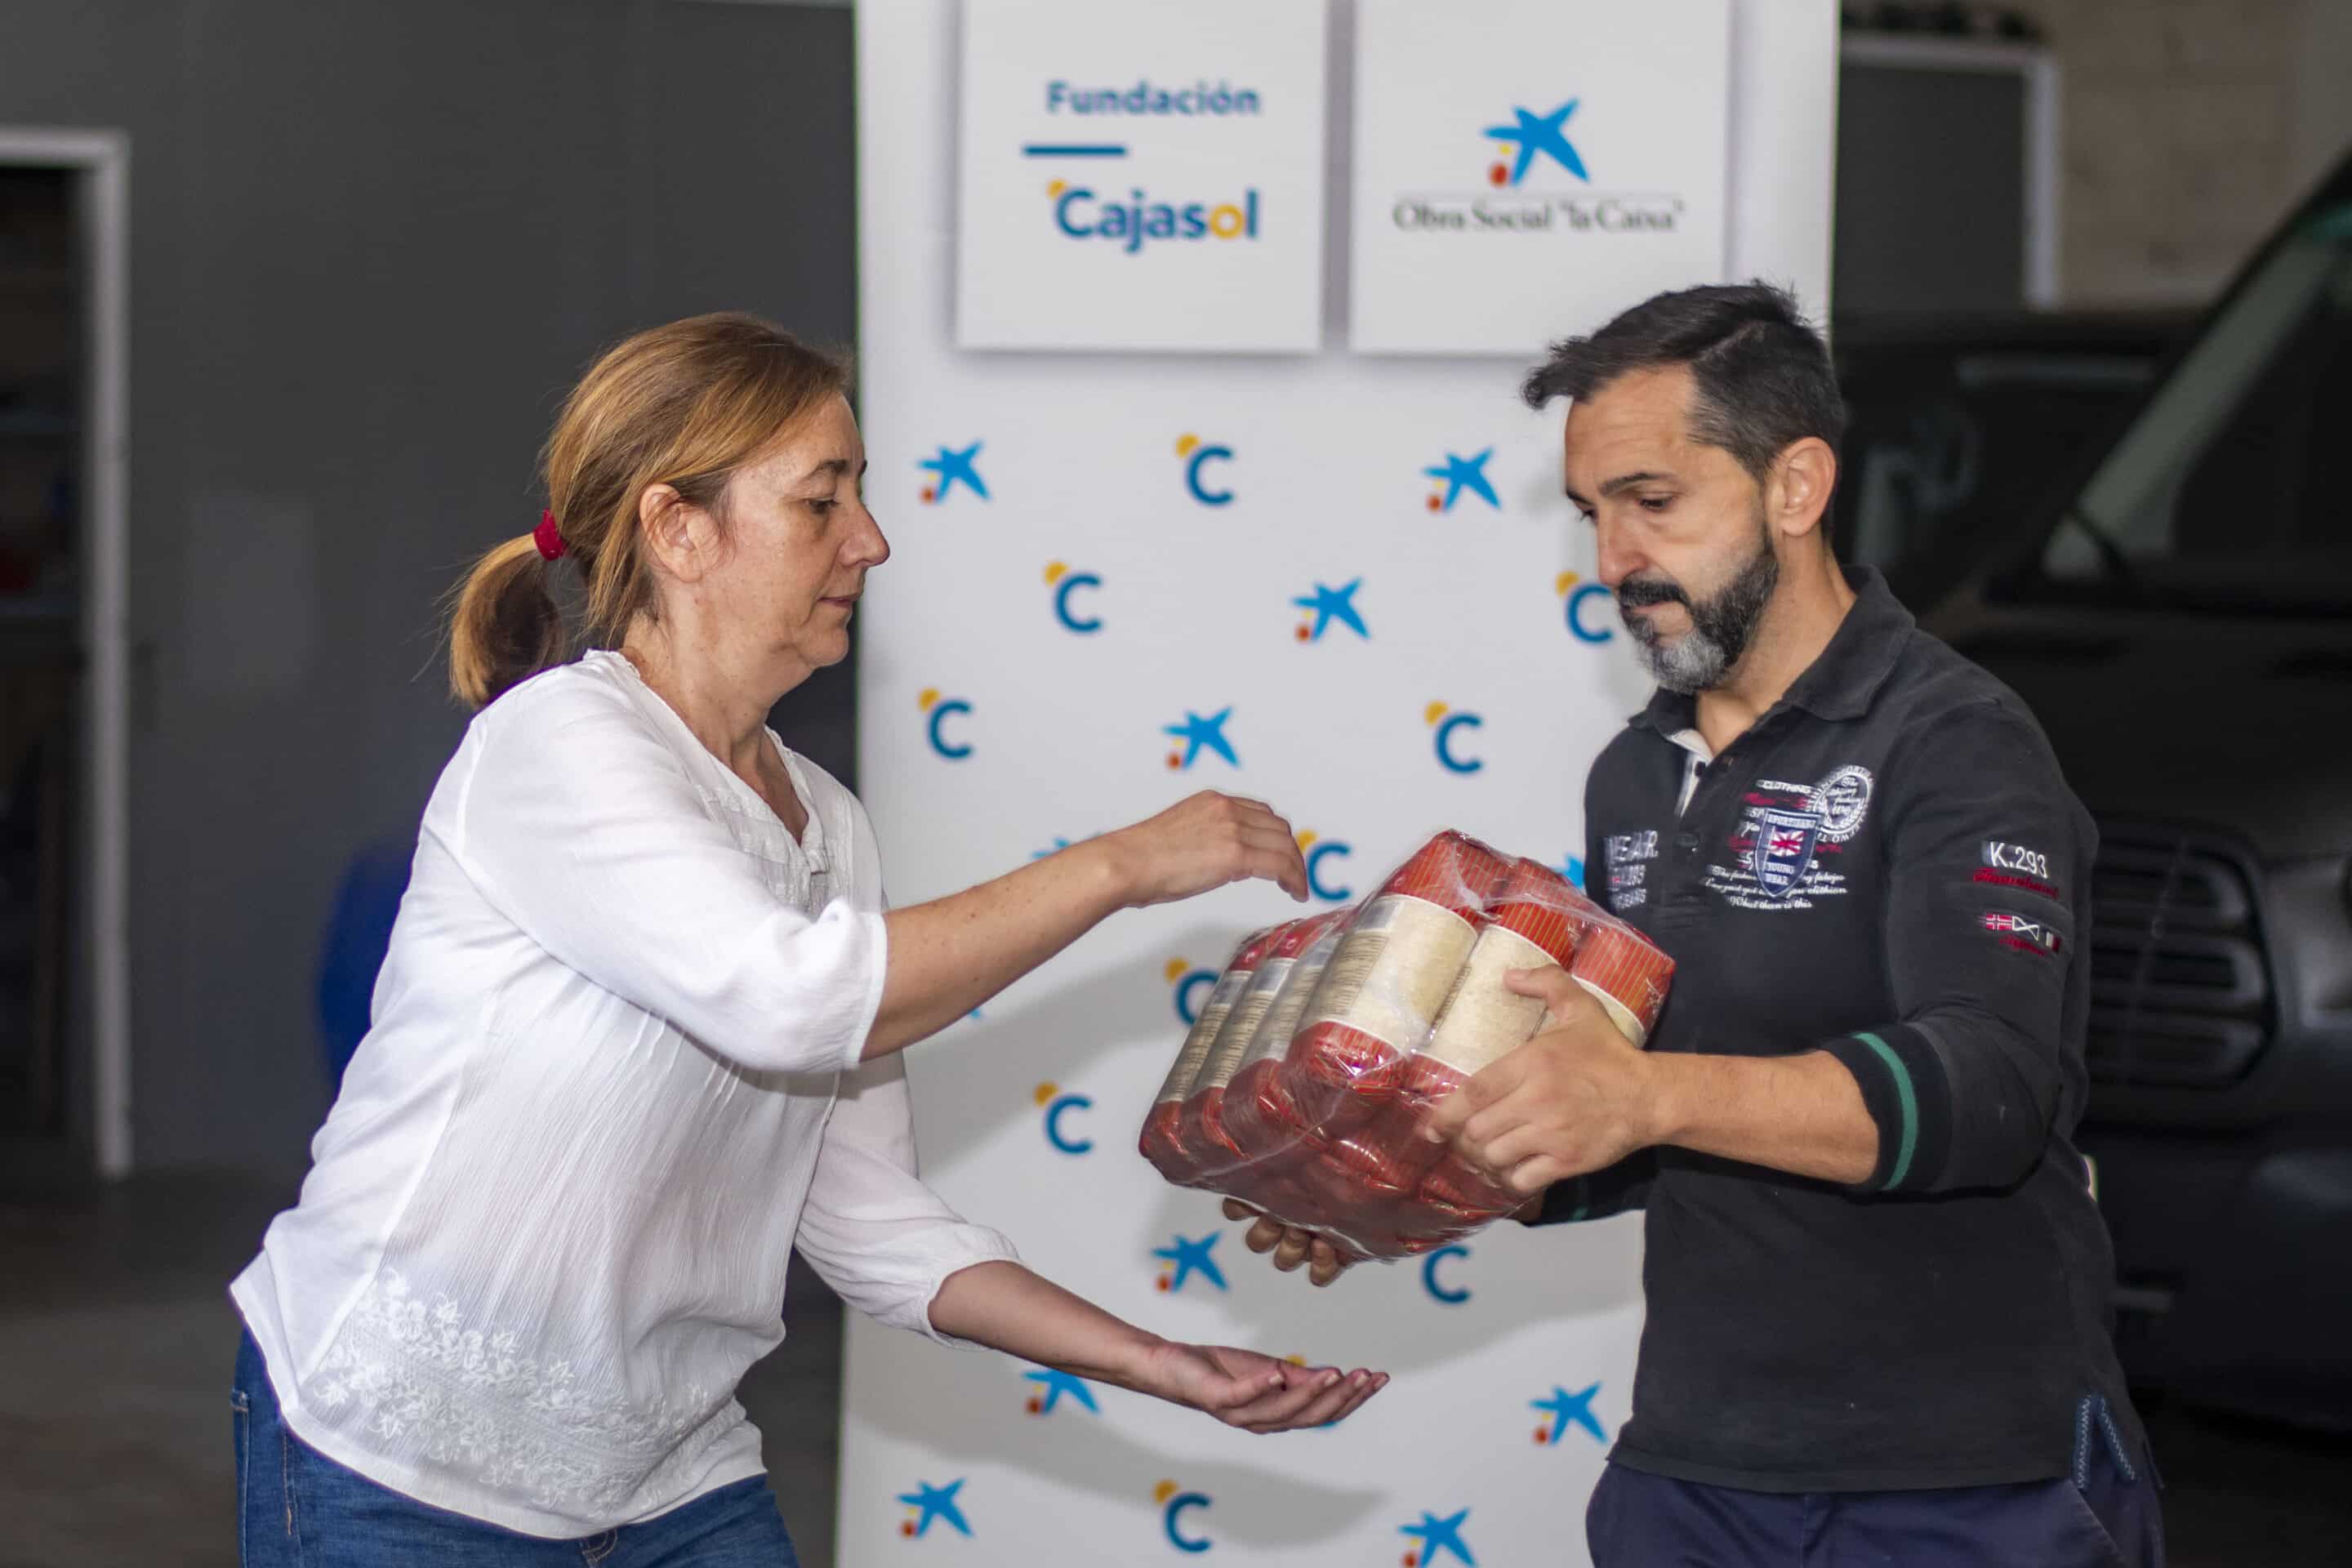 Andaluces Compartiendo dona alimentos en Huelva